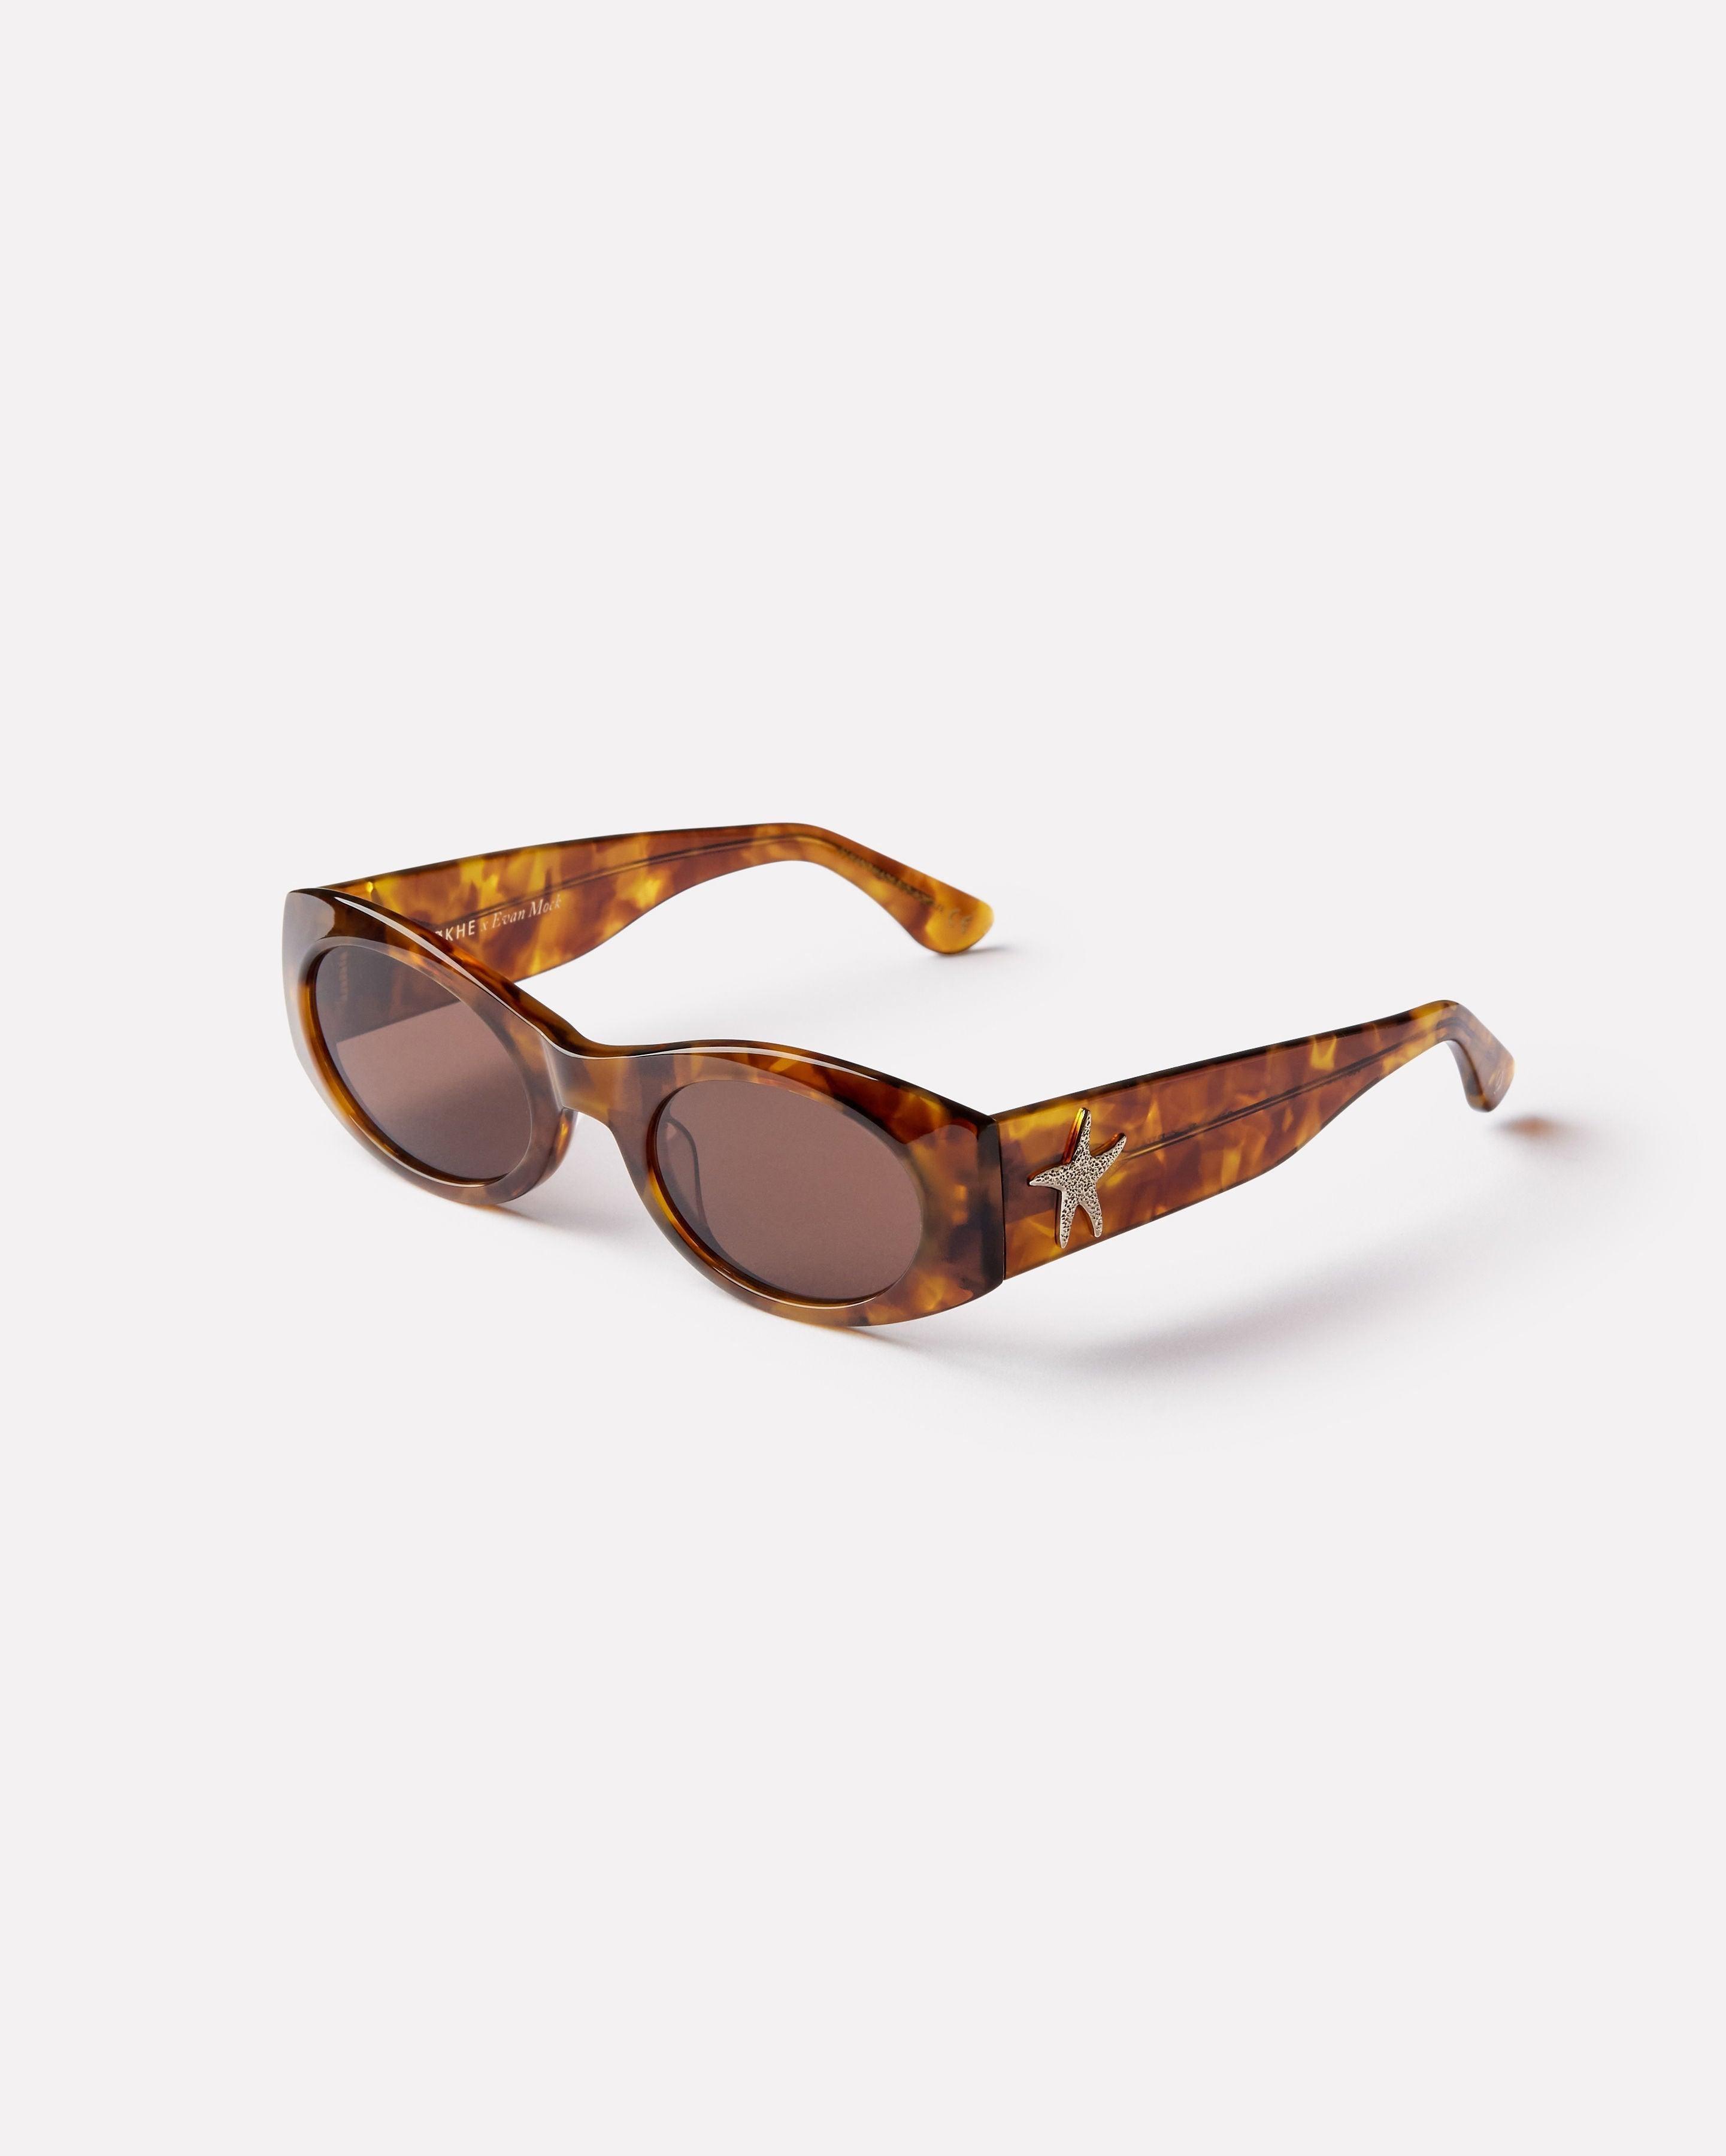 Suede - Tortoise Polished / Bronze - EPOKHE EYEWEAR Sunglasses